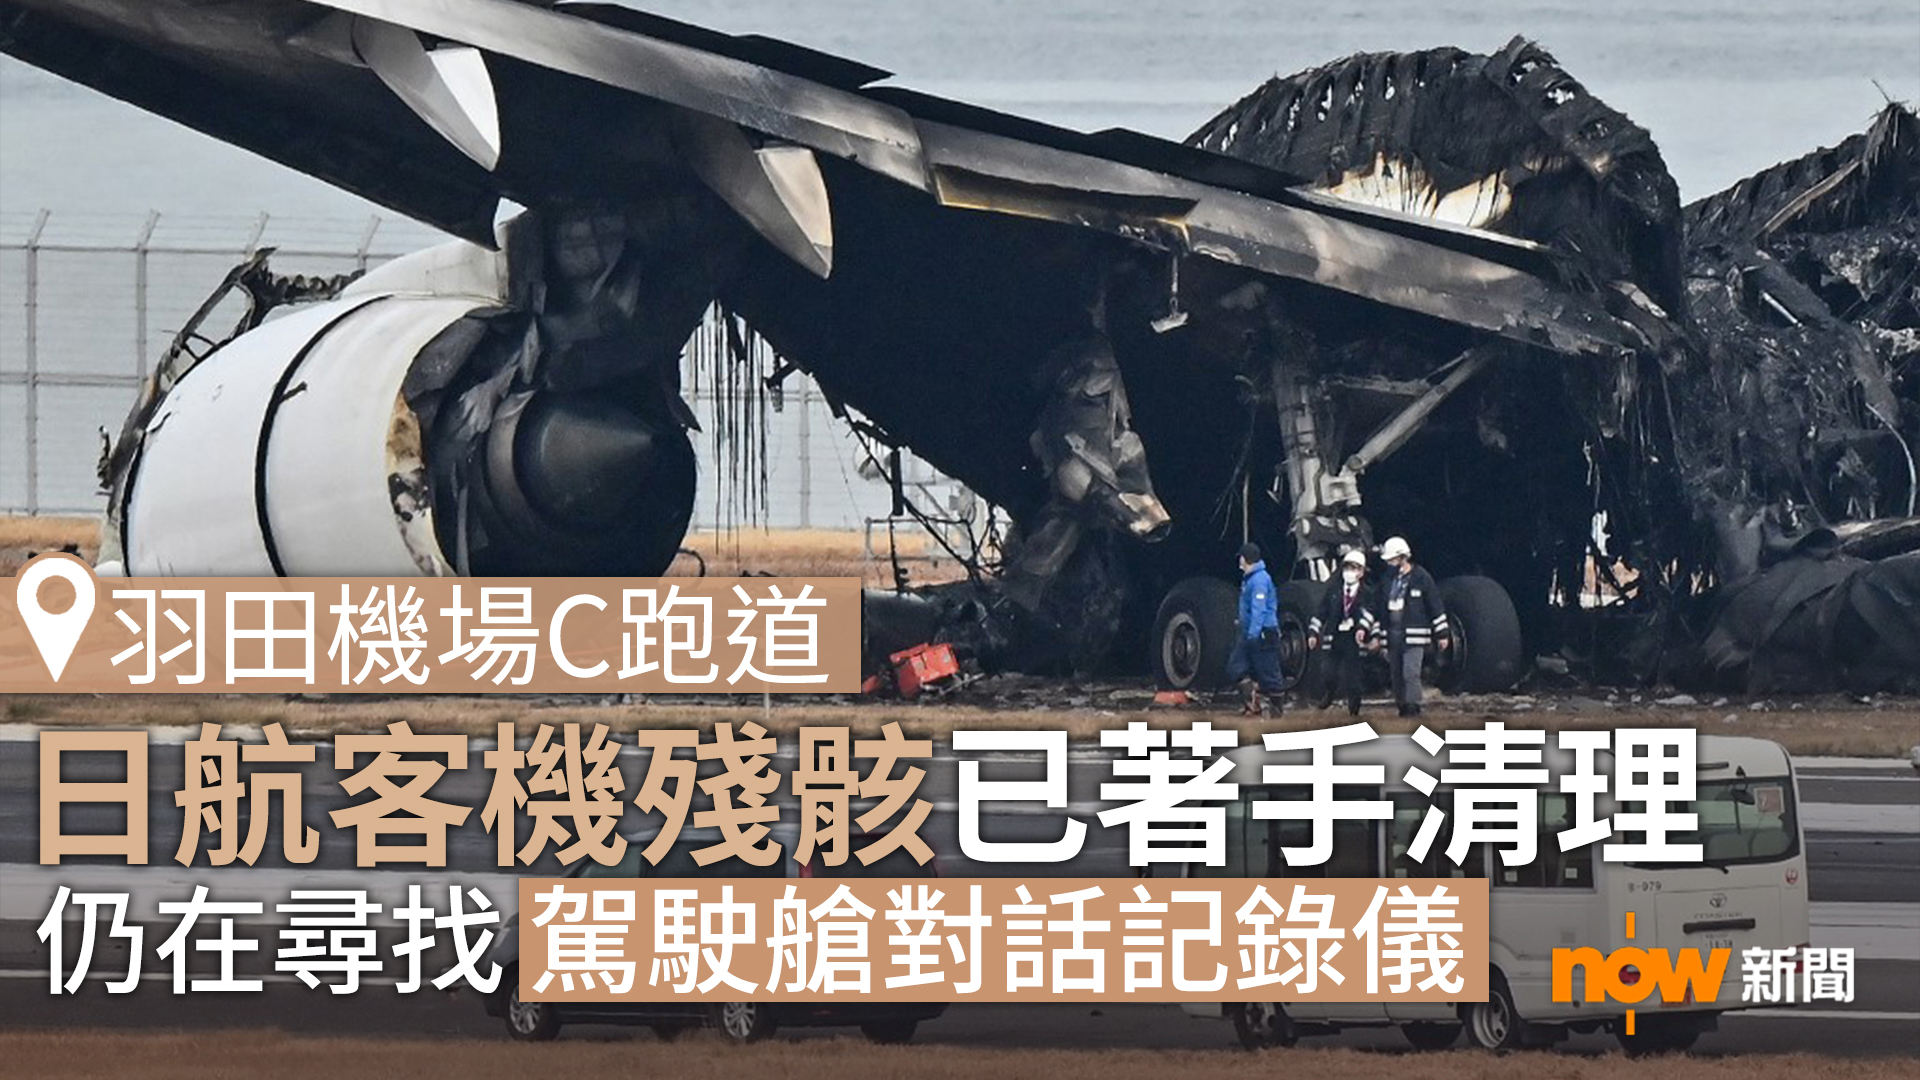 羽田機場跑道日航客機殘骸已著手清理